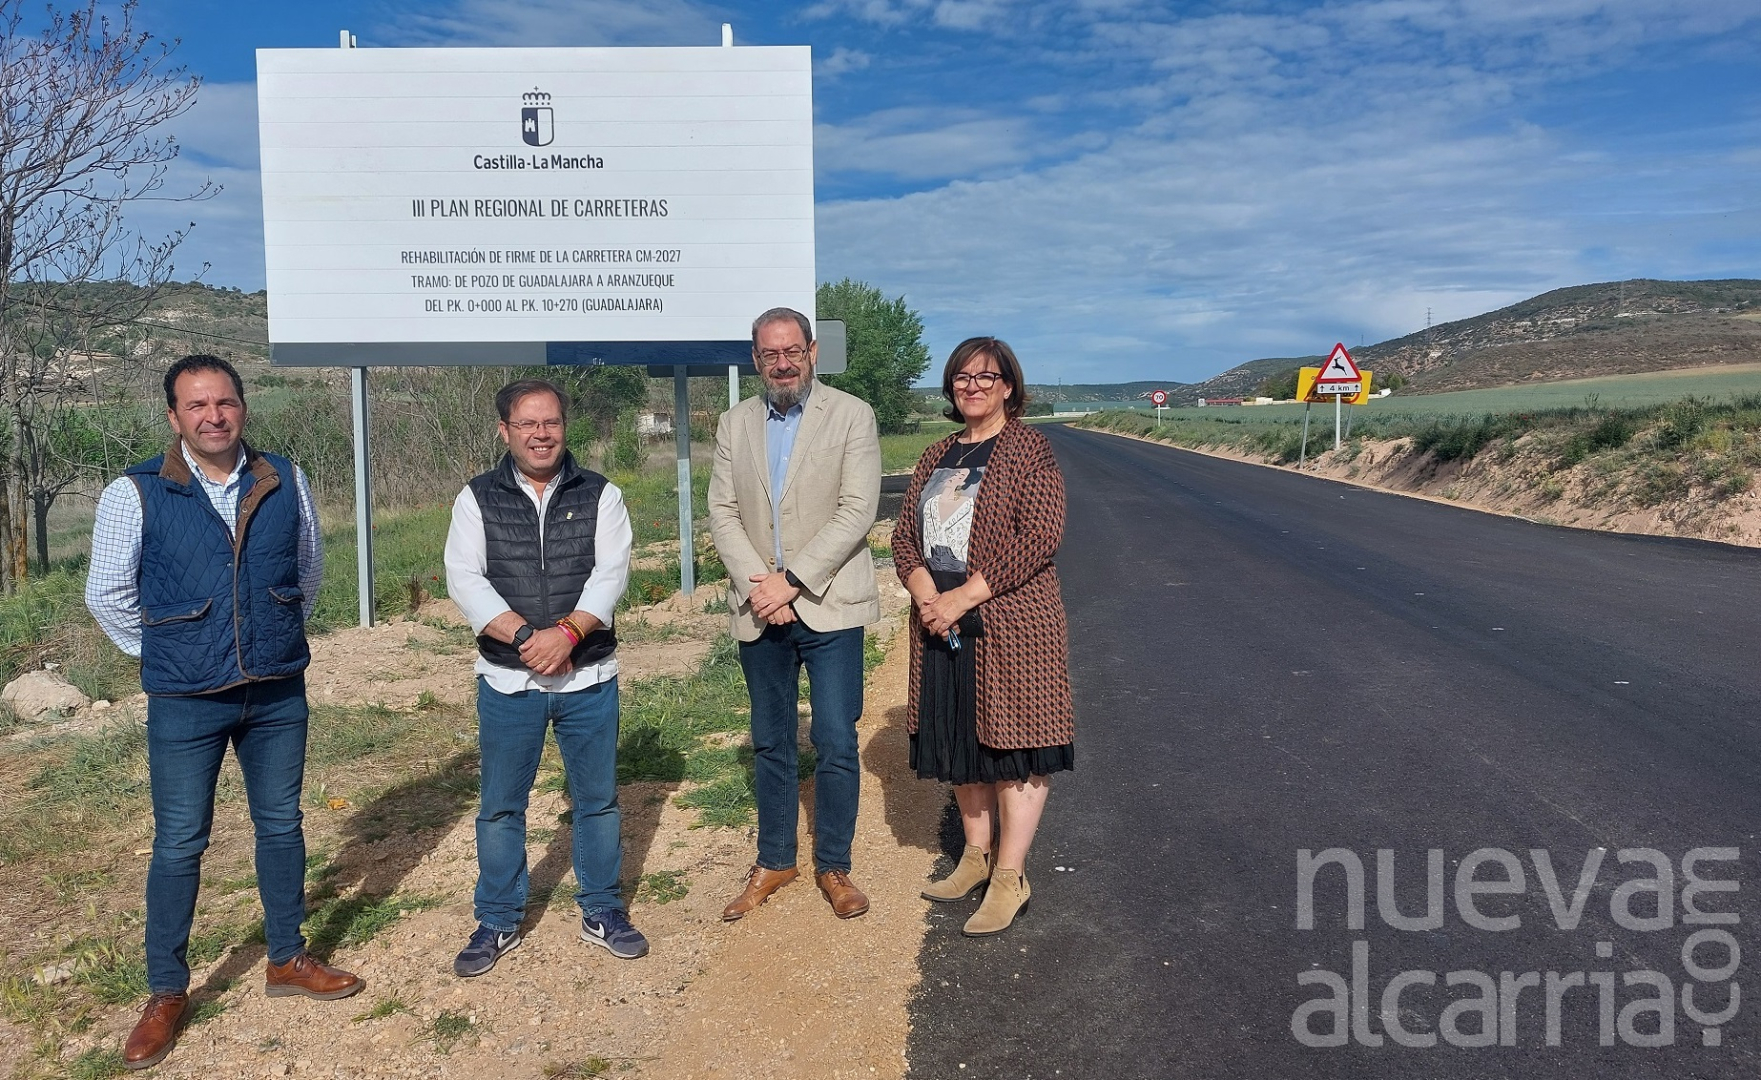 El delegado de la Junta visita las obras de rehabilitación del firme de la carretera CM-2027 entre Pozo de Guadalajara y Aranzueque